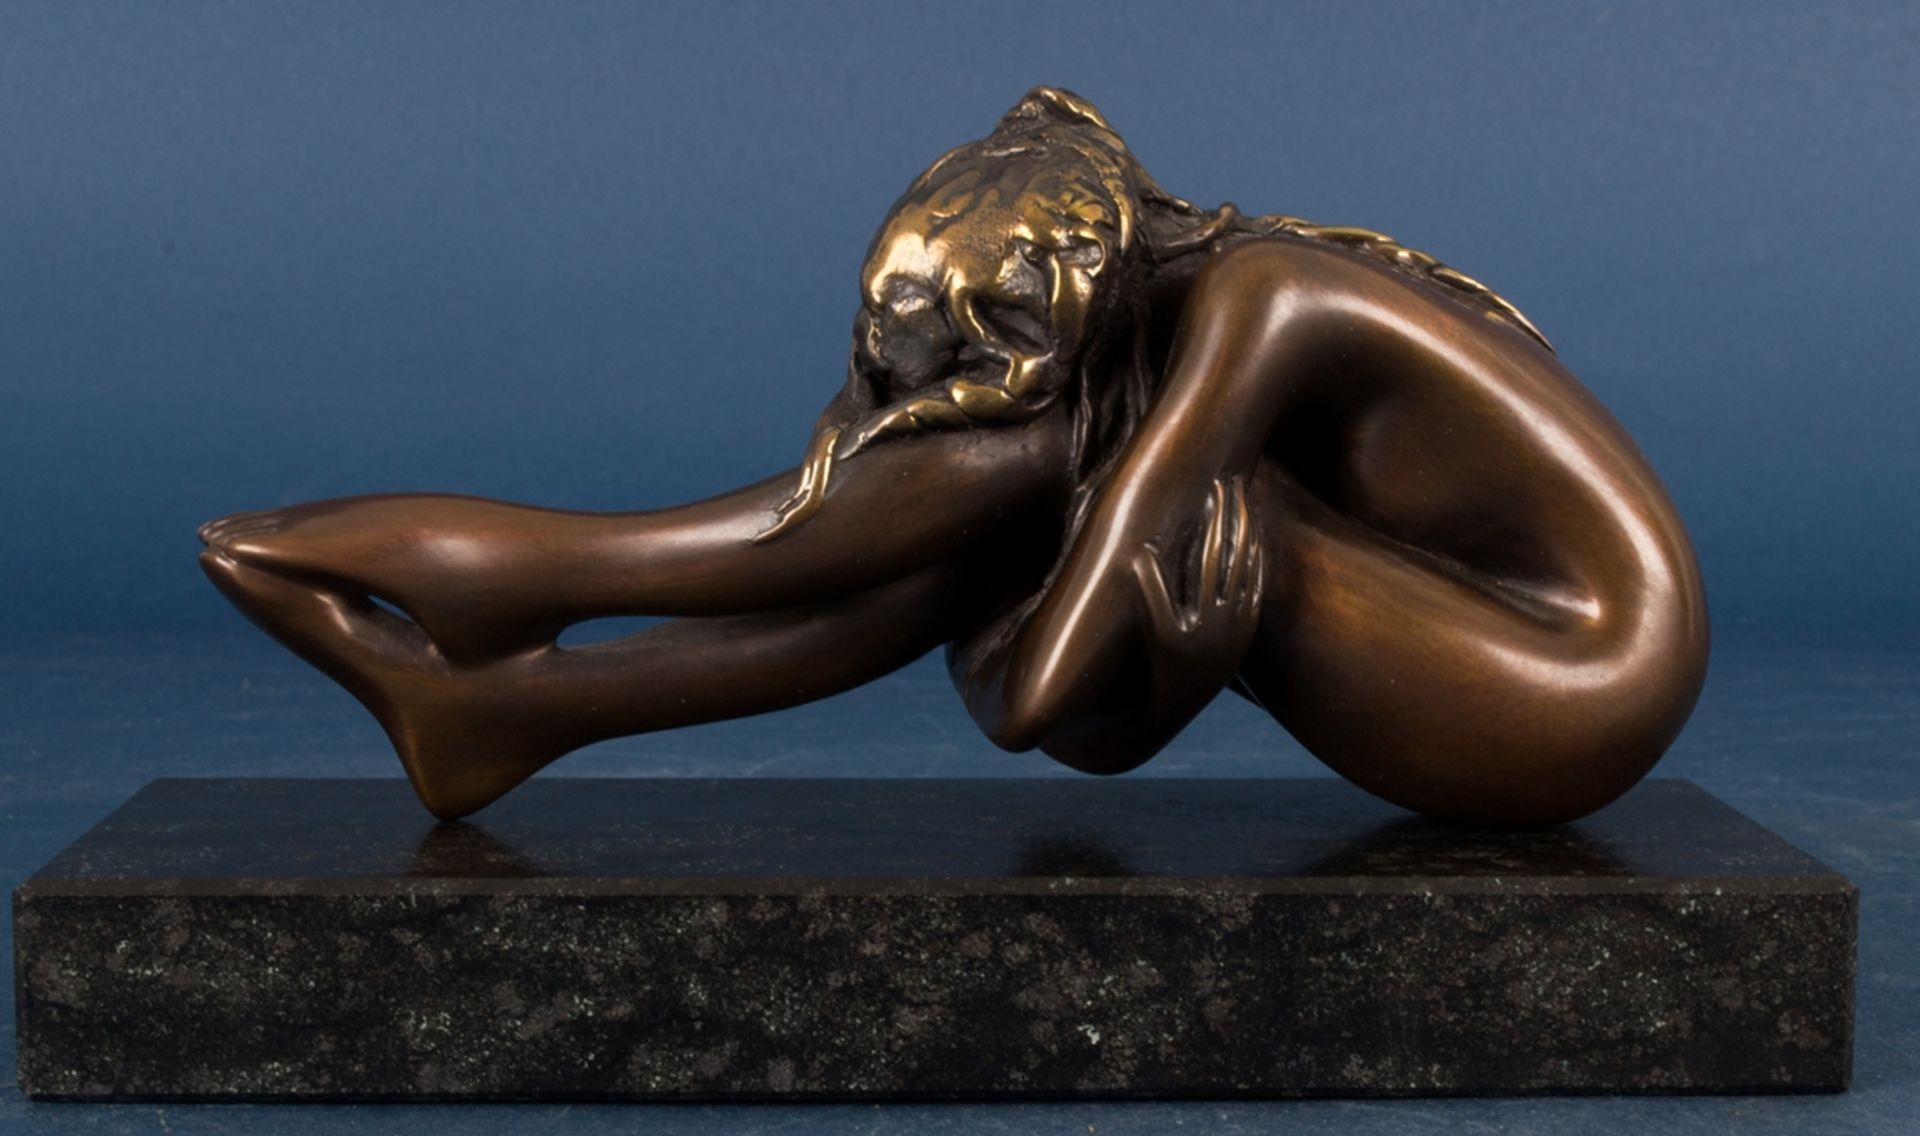 "LA SORELLA" - goldbraun patinierte Bronzefigur einer jungen weiblichen, nackten Schönheit, die nach